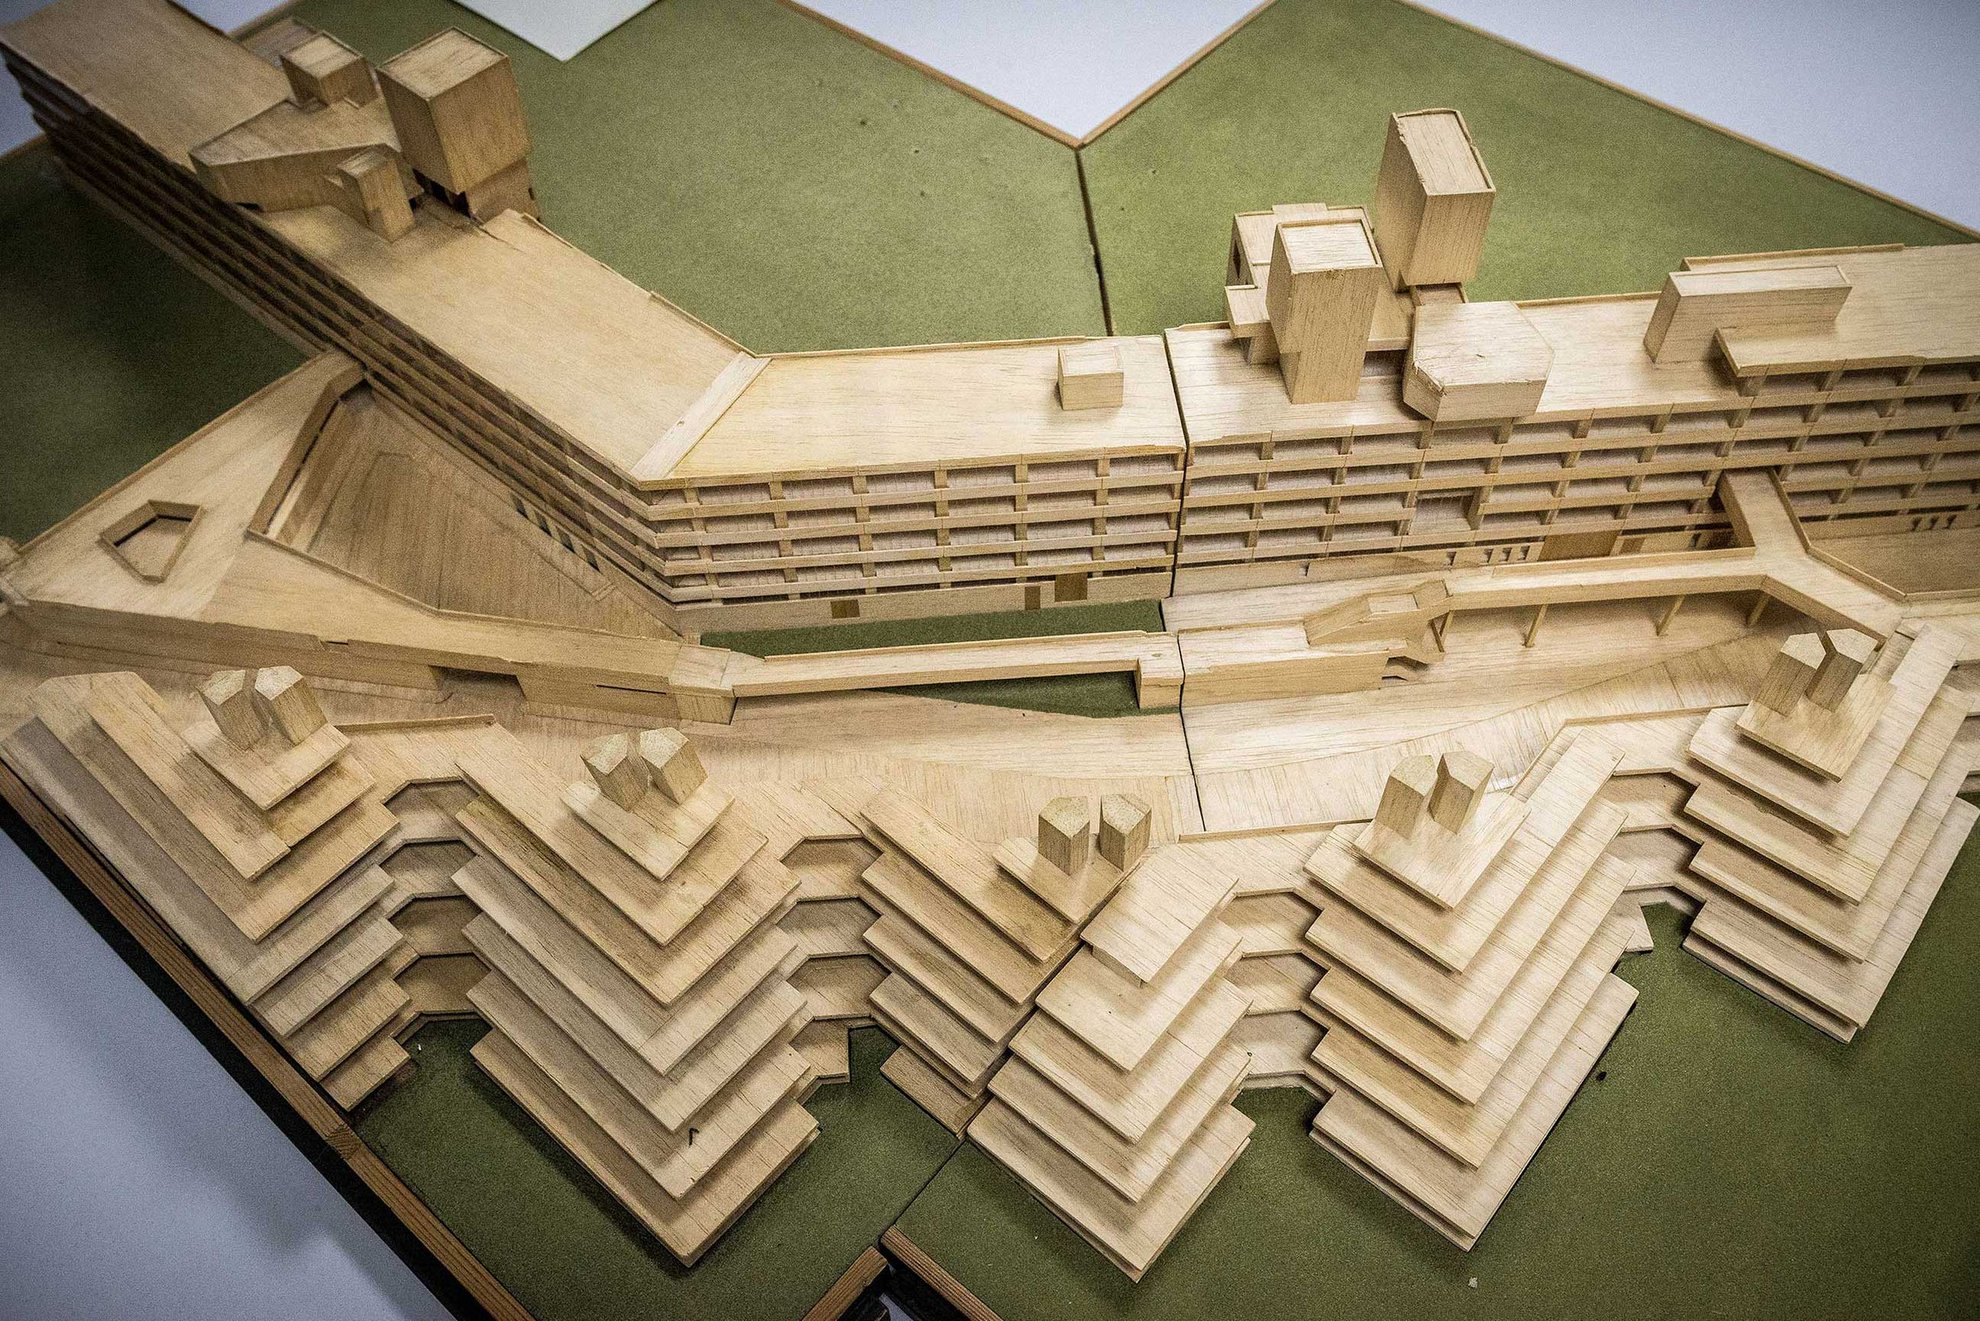 Denys Lasdun’s original architectural model